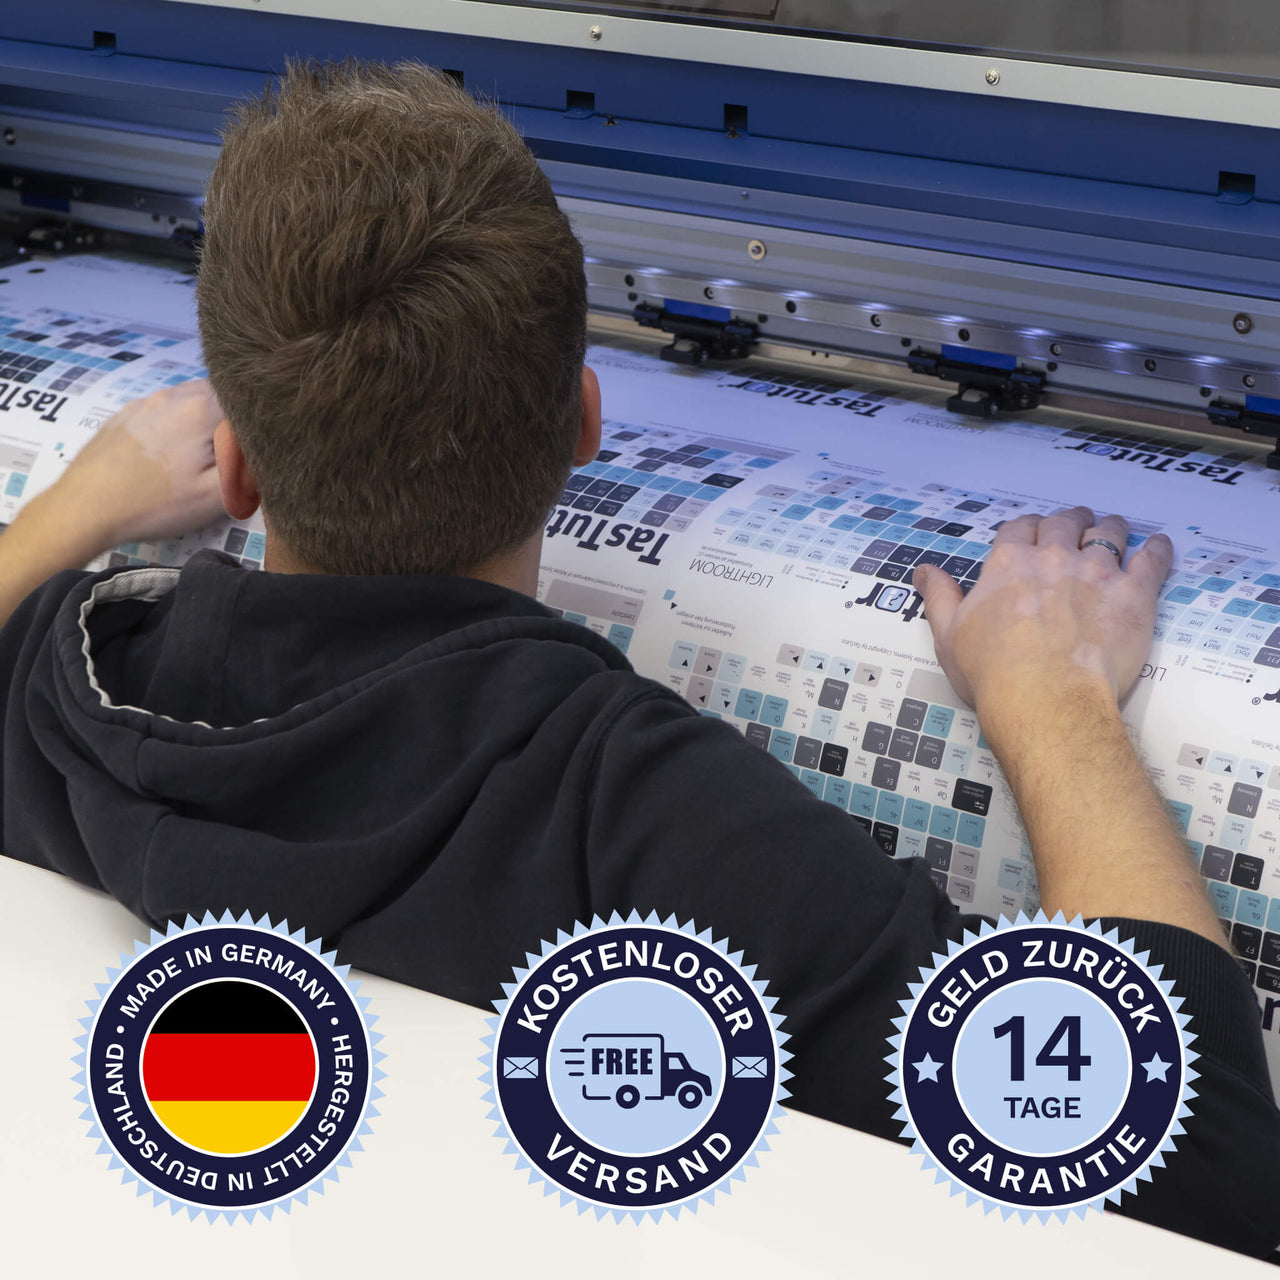 Bulgarische Tastaturaufkleber werden in Deutschland hergestellt. Der Versand ist kostenlos und wir gewährleisten 14 Tage Geld zurück Garantie | TasTutor